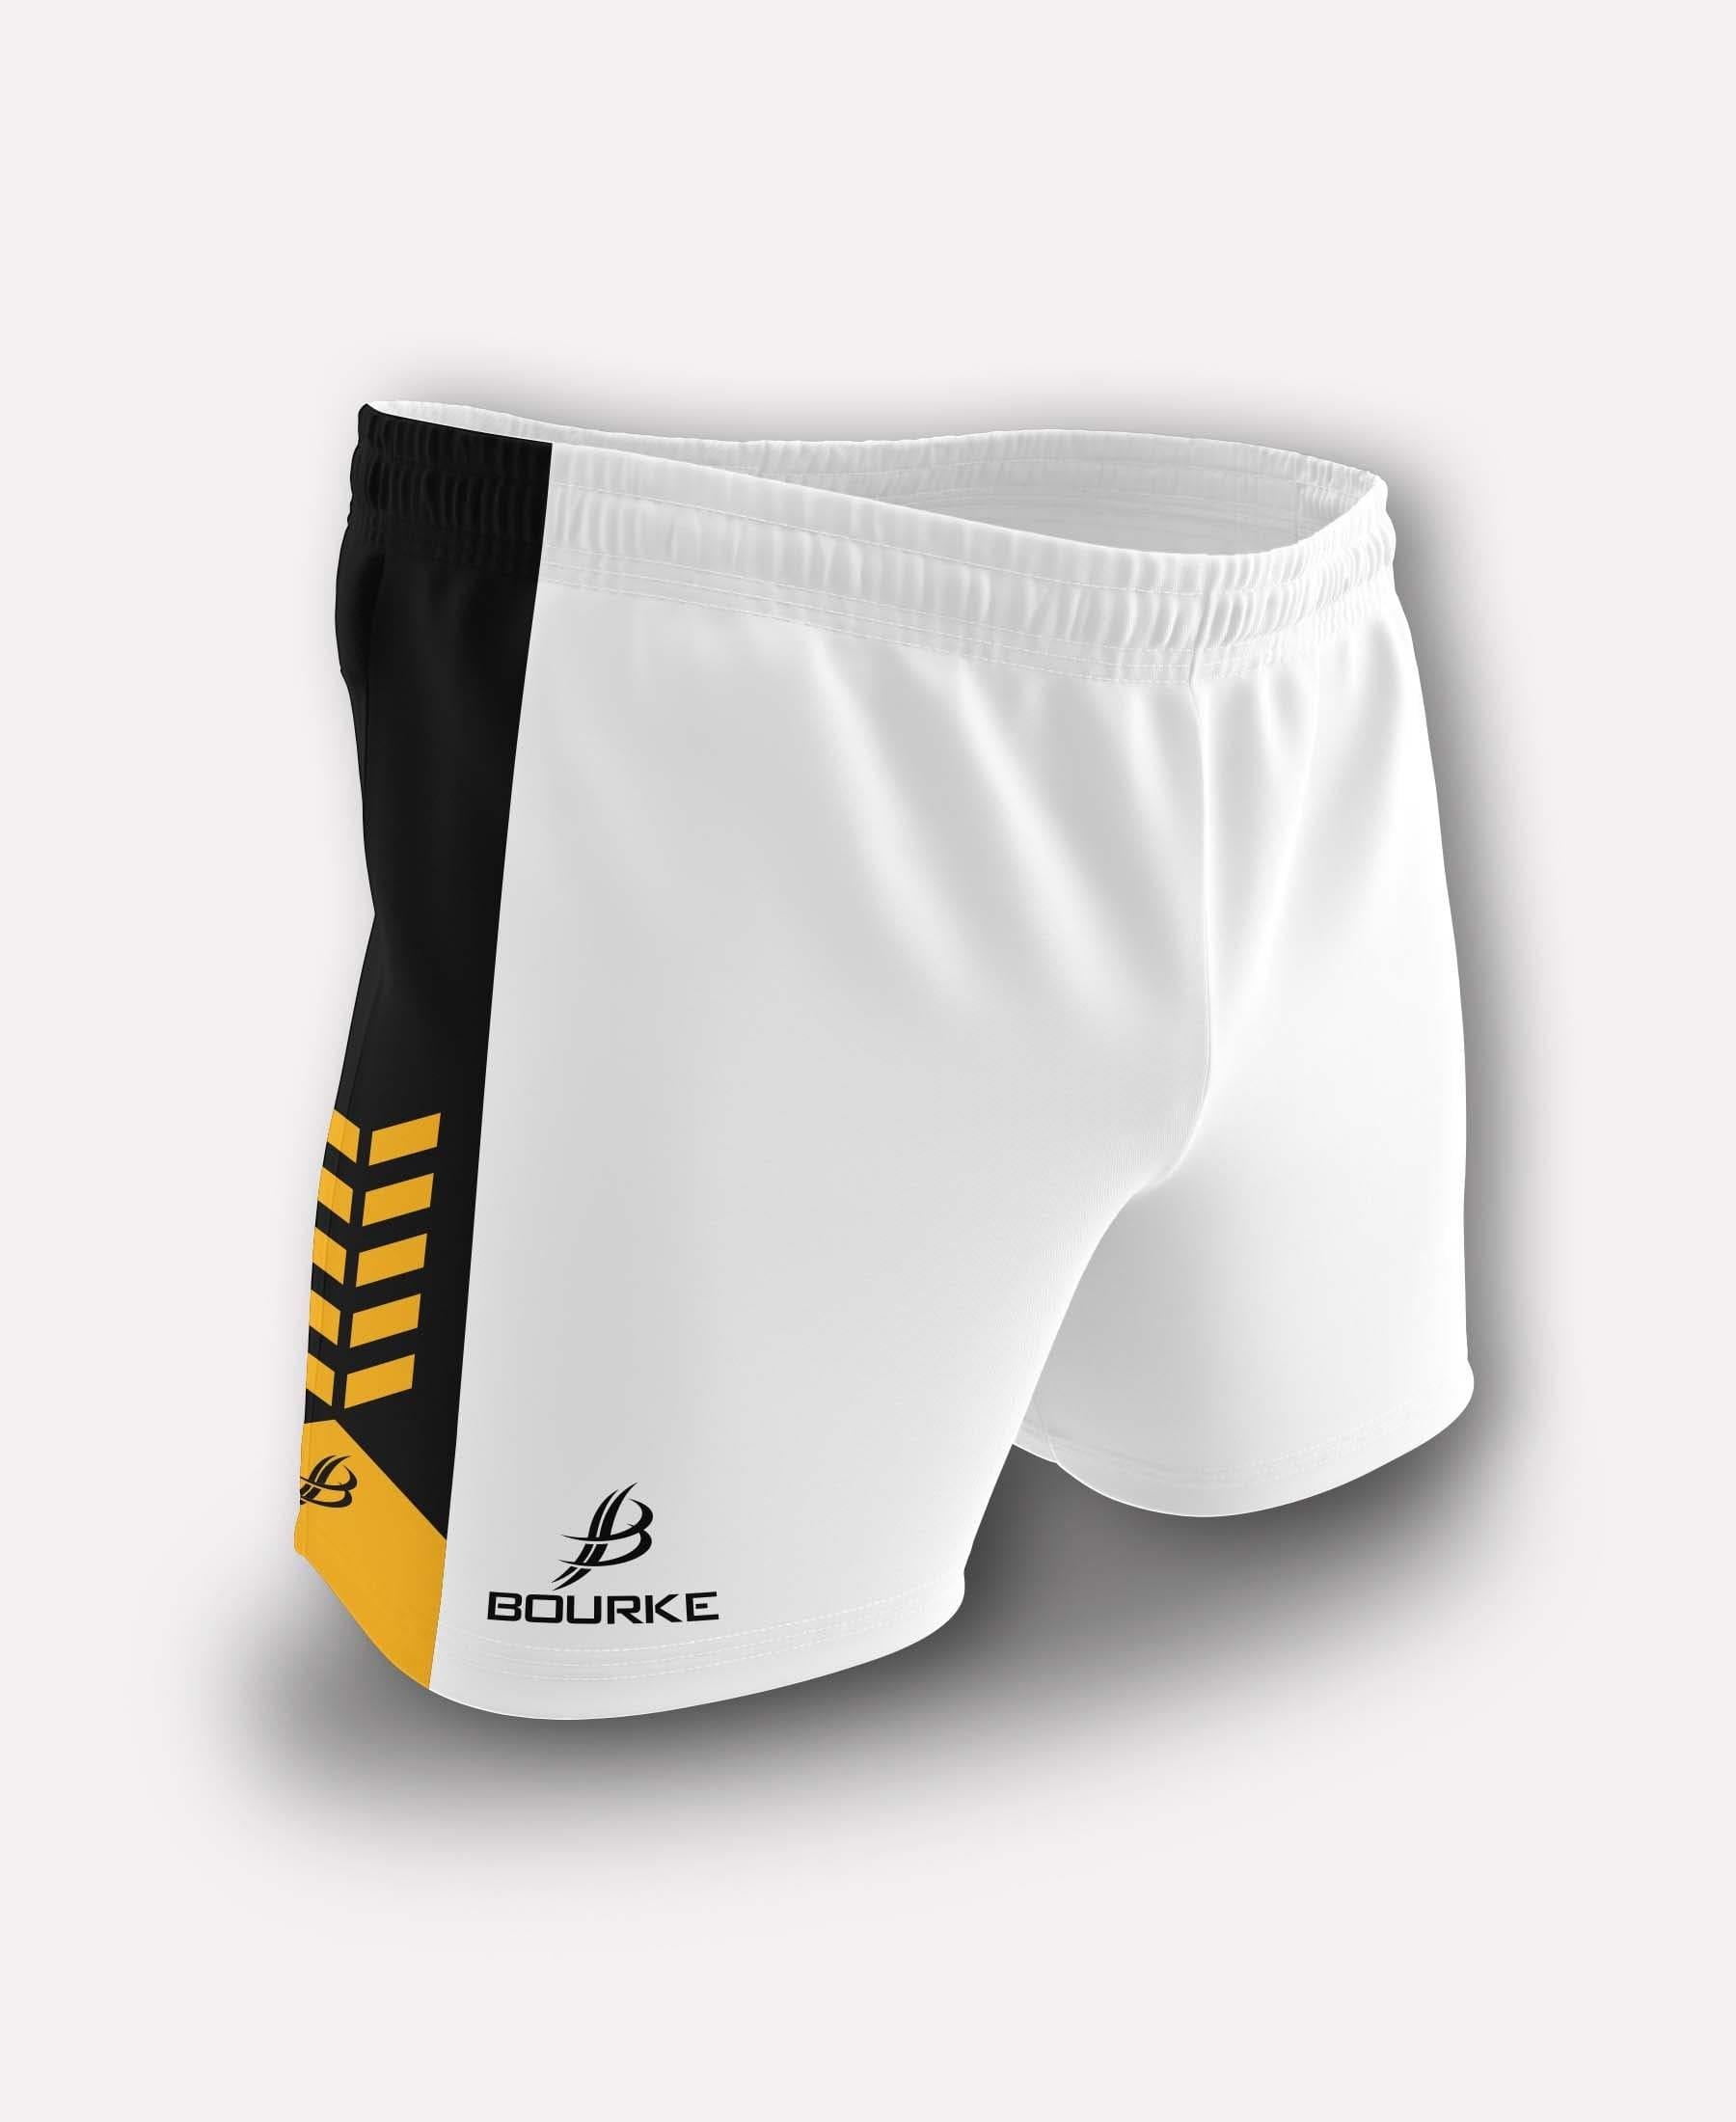 Chevron Kids Shorts (White/Black/Amber) - Bourke Sports Limited